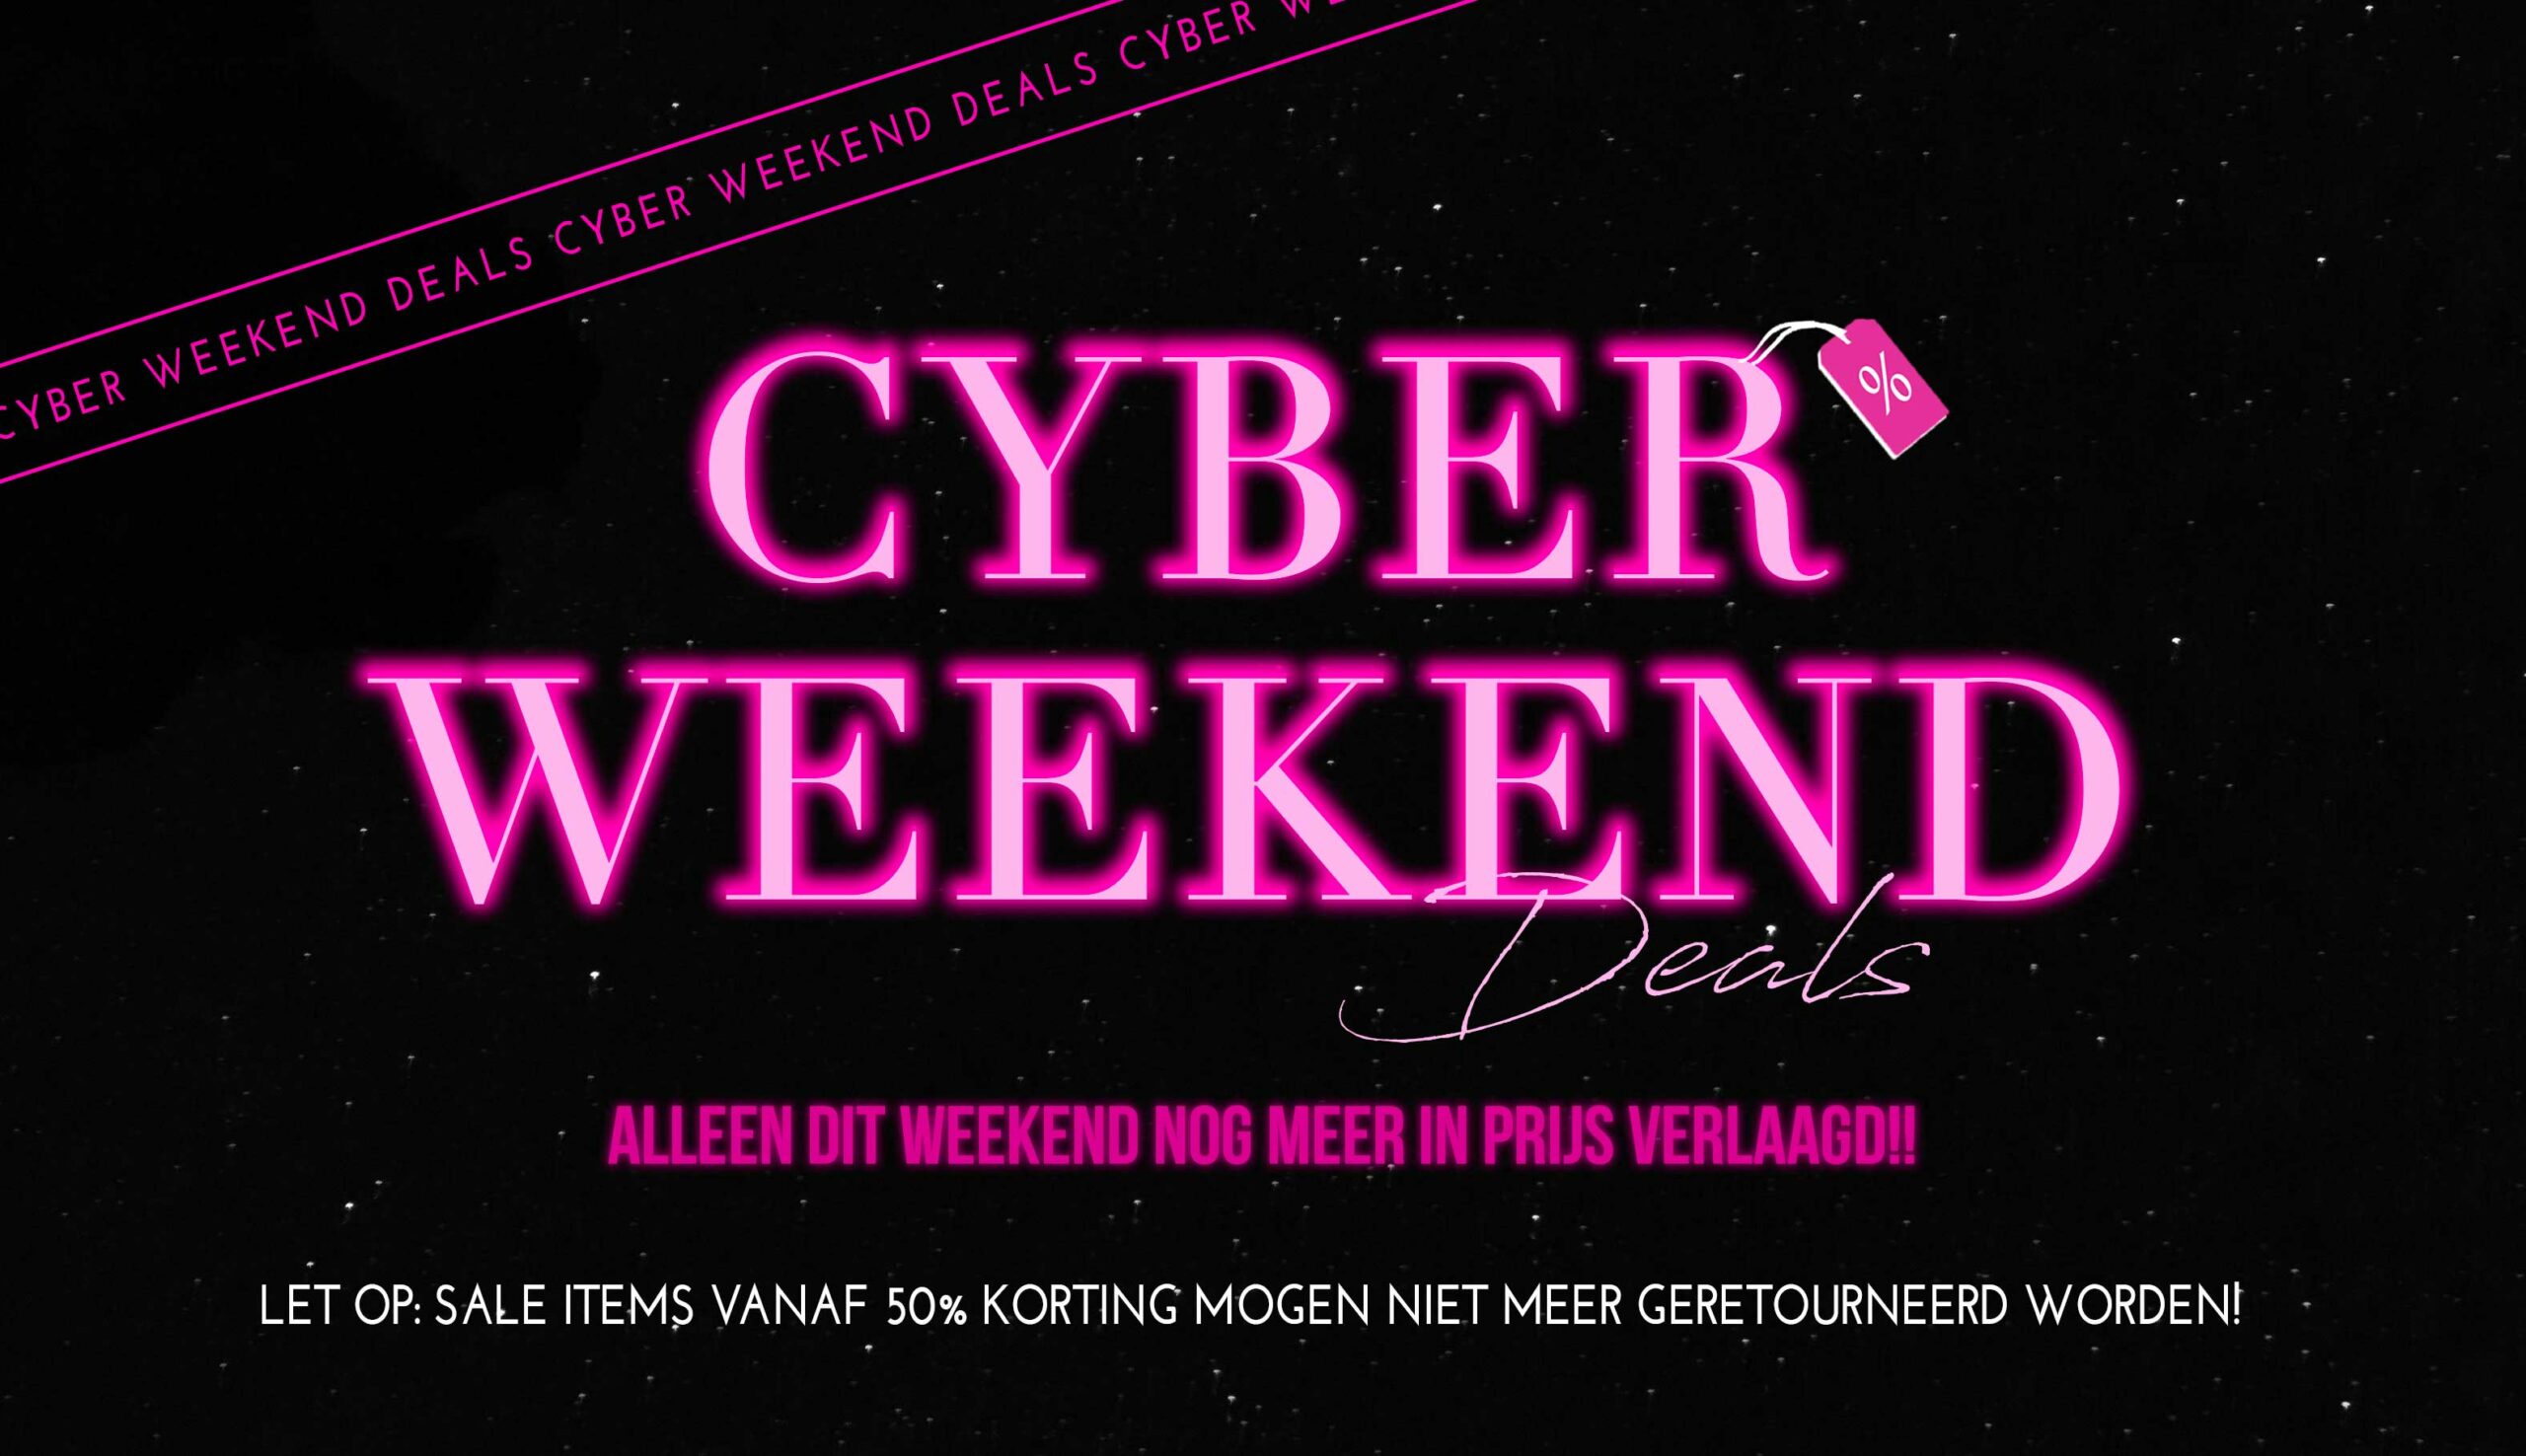 Cyber weekend